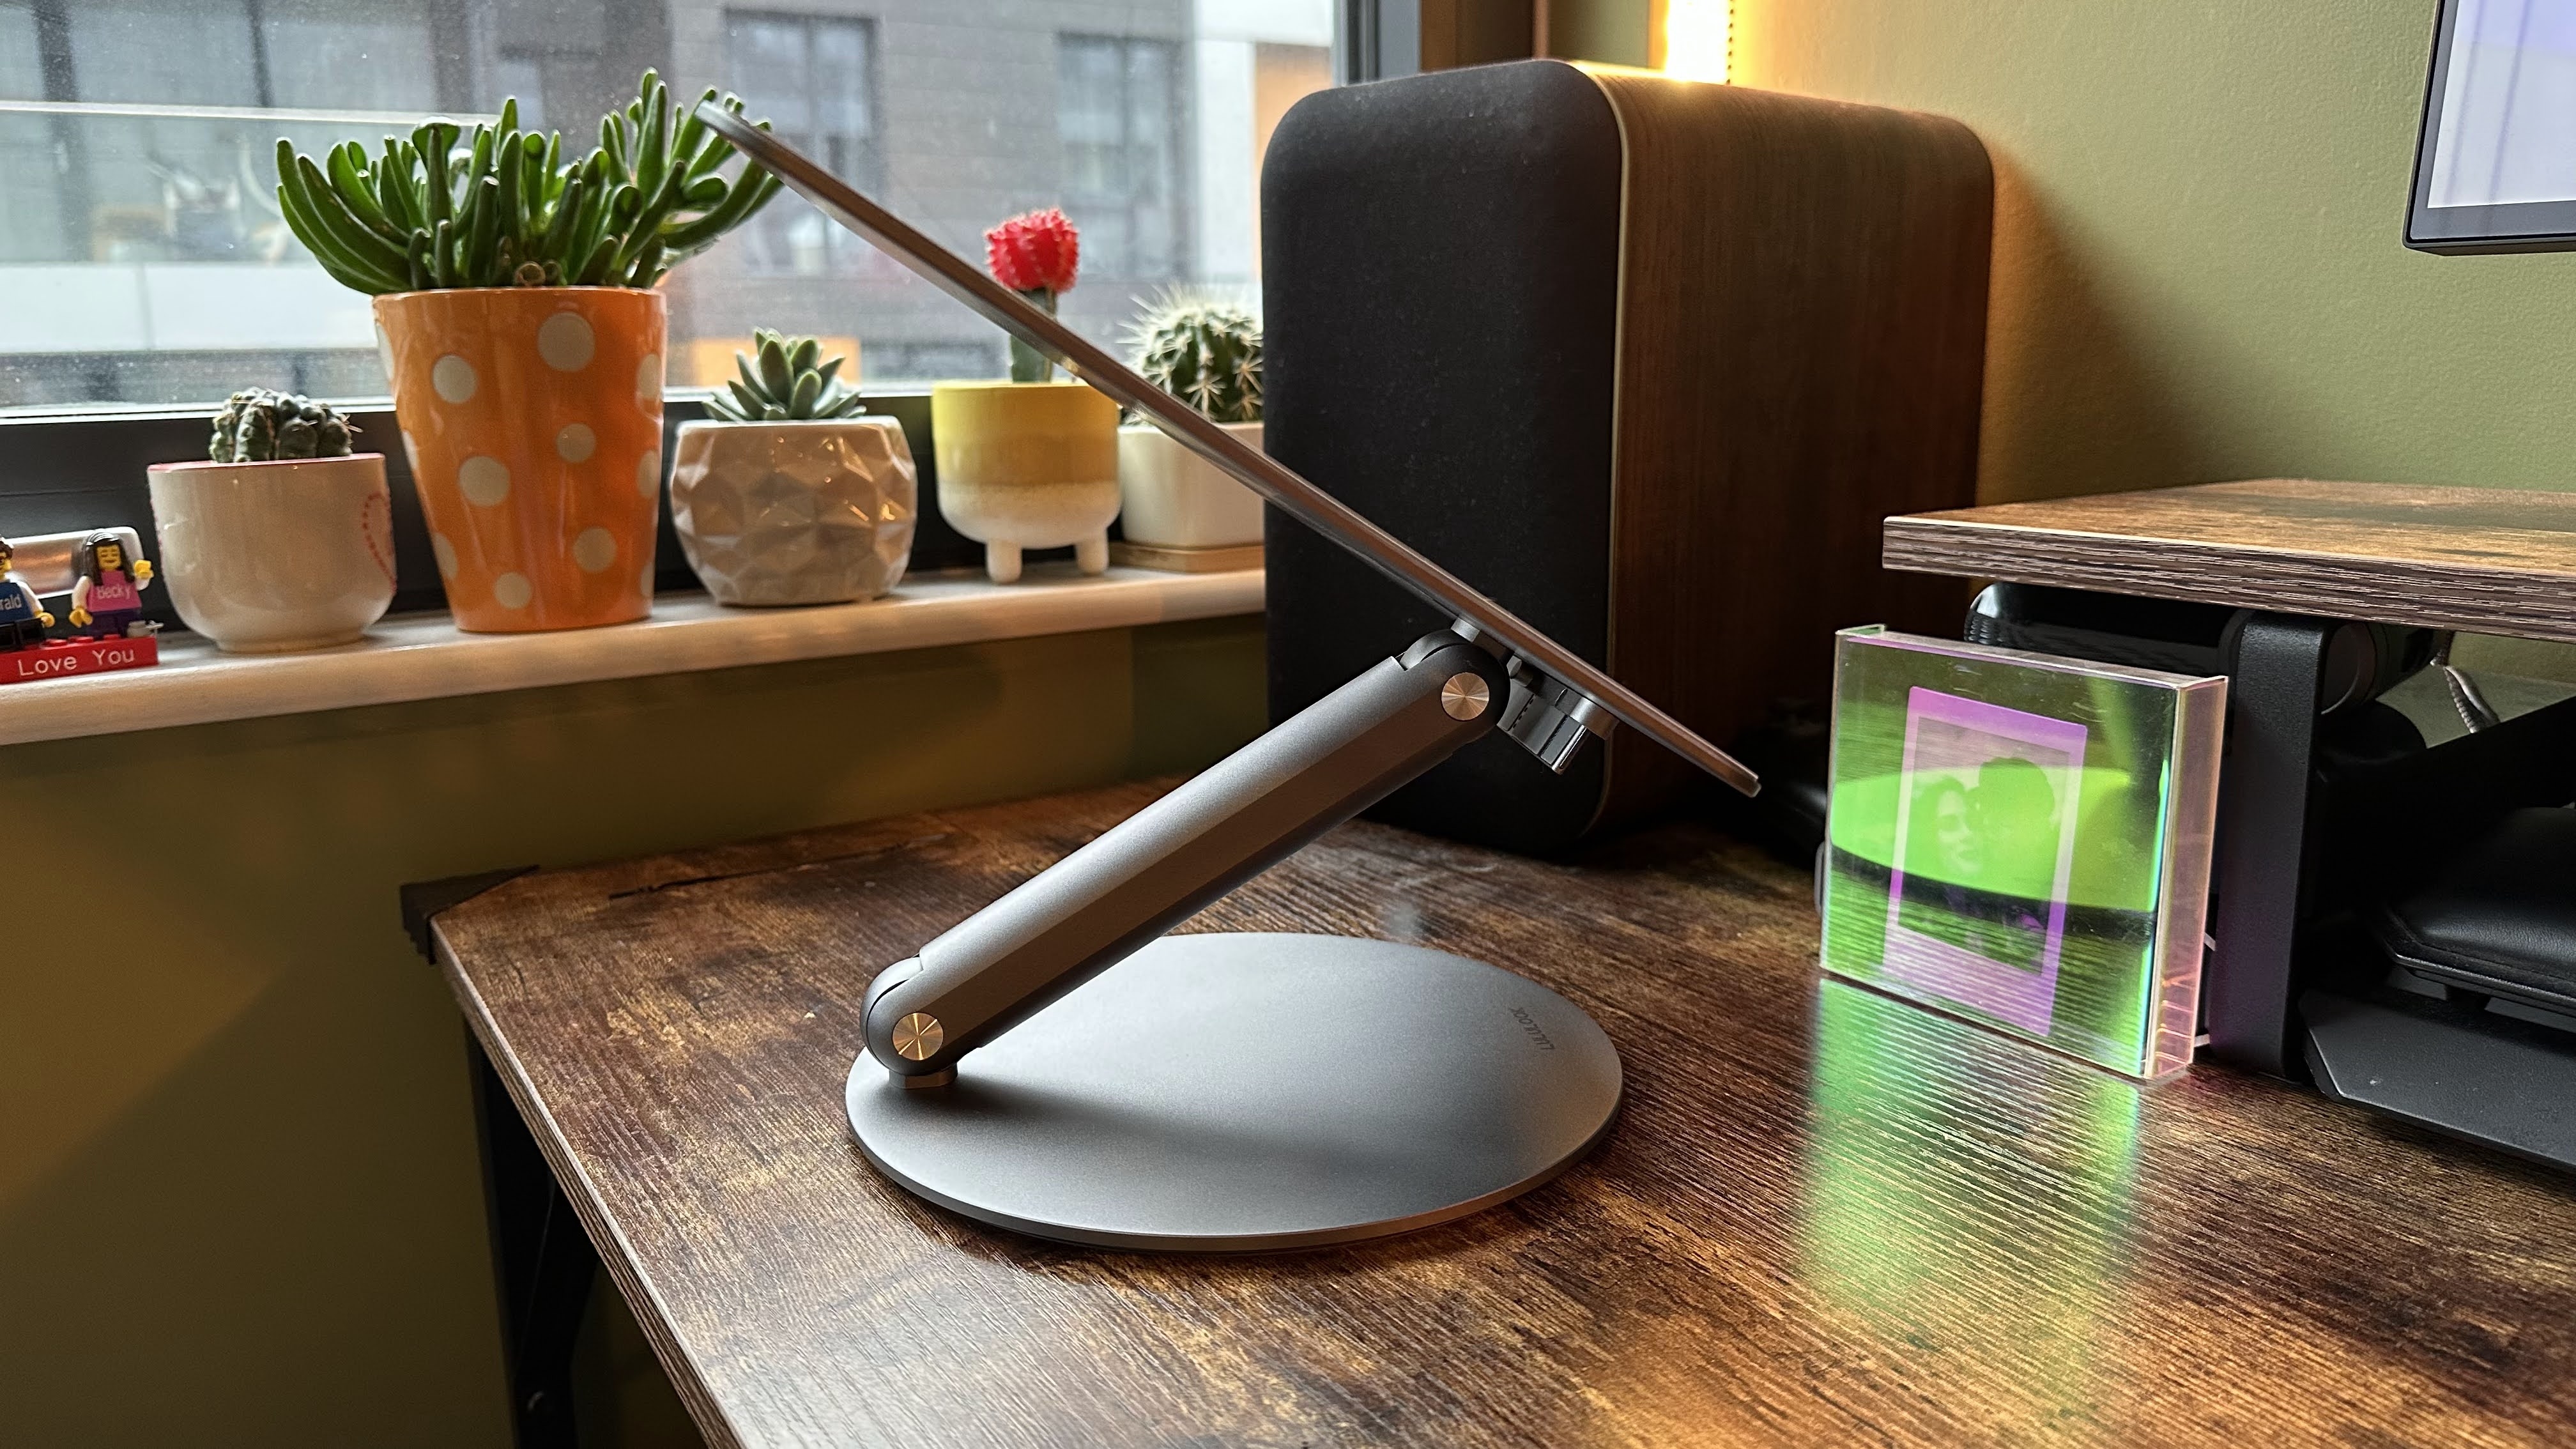 Lululook 360 Rotating Foldable Laptop Stand di atas meja kayu